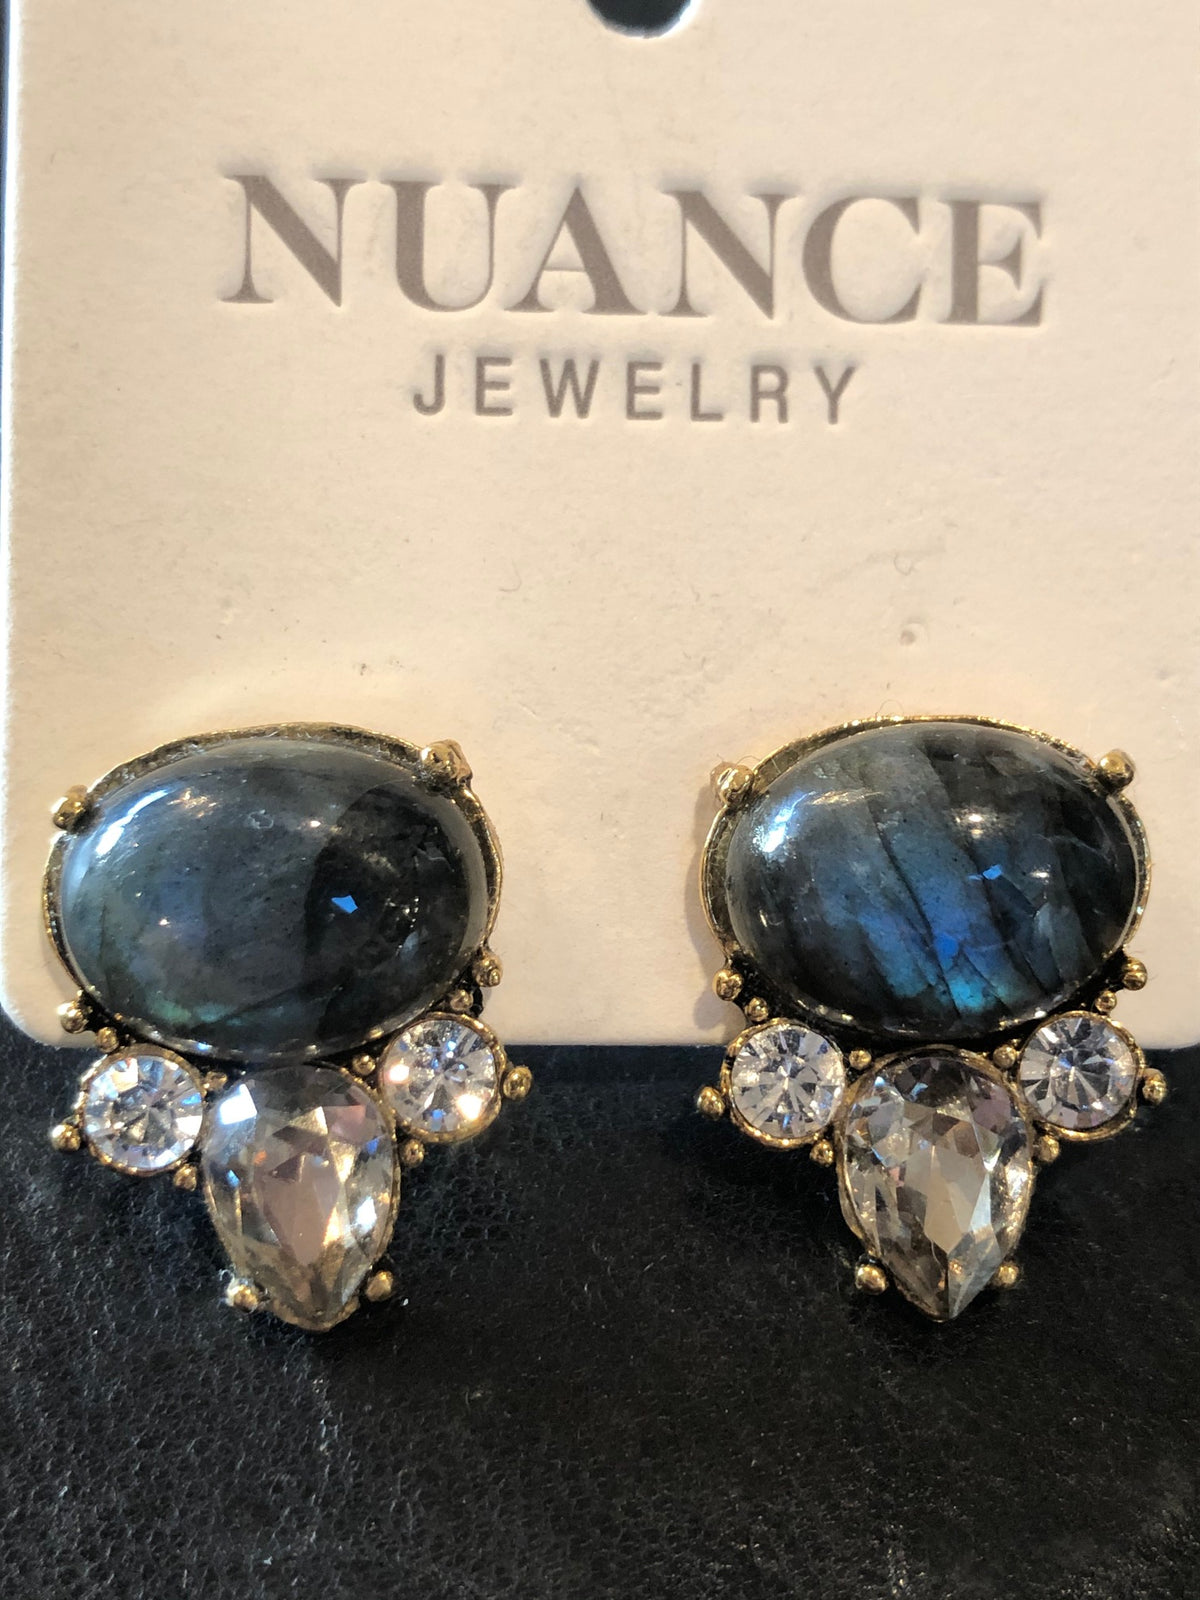 Nuance Emanuel Arch Earrings